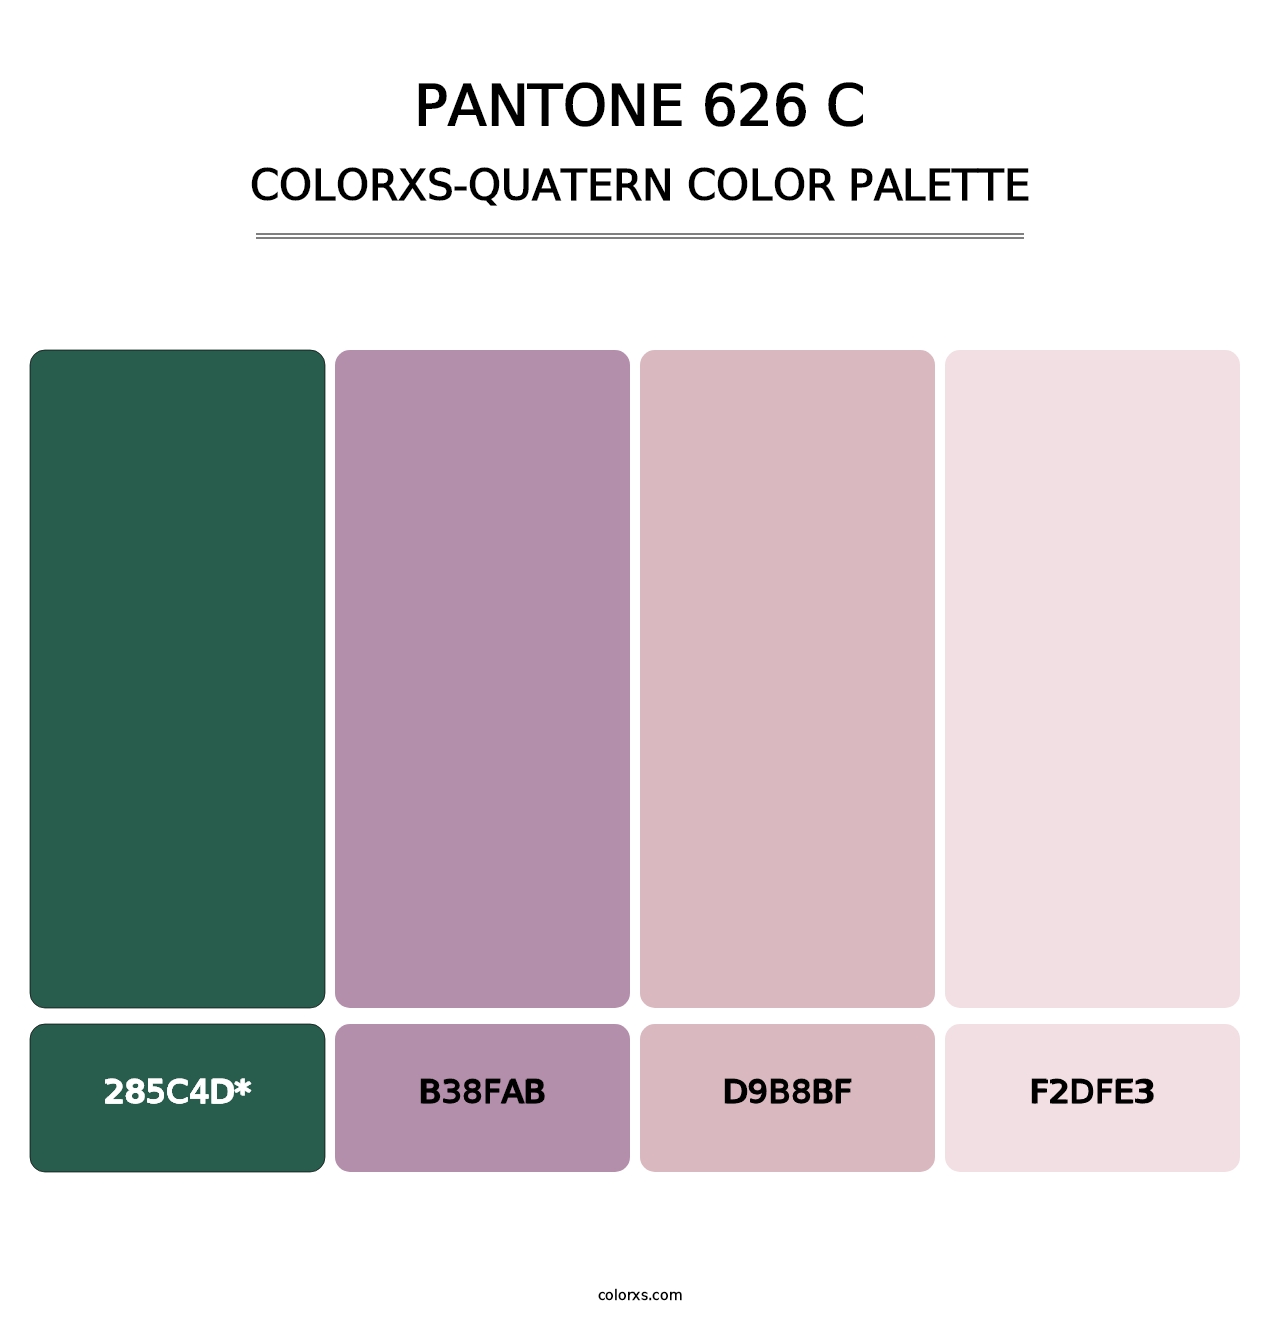 PANTONE 626 C - Colorxs Quad Palette